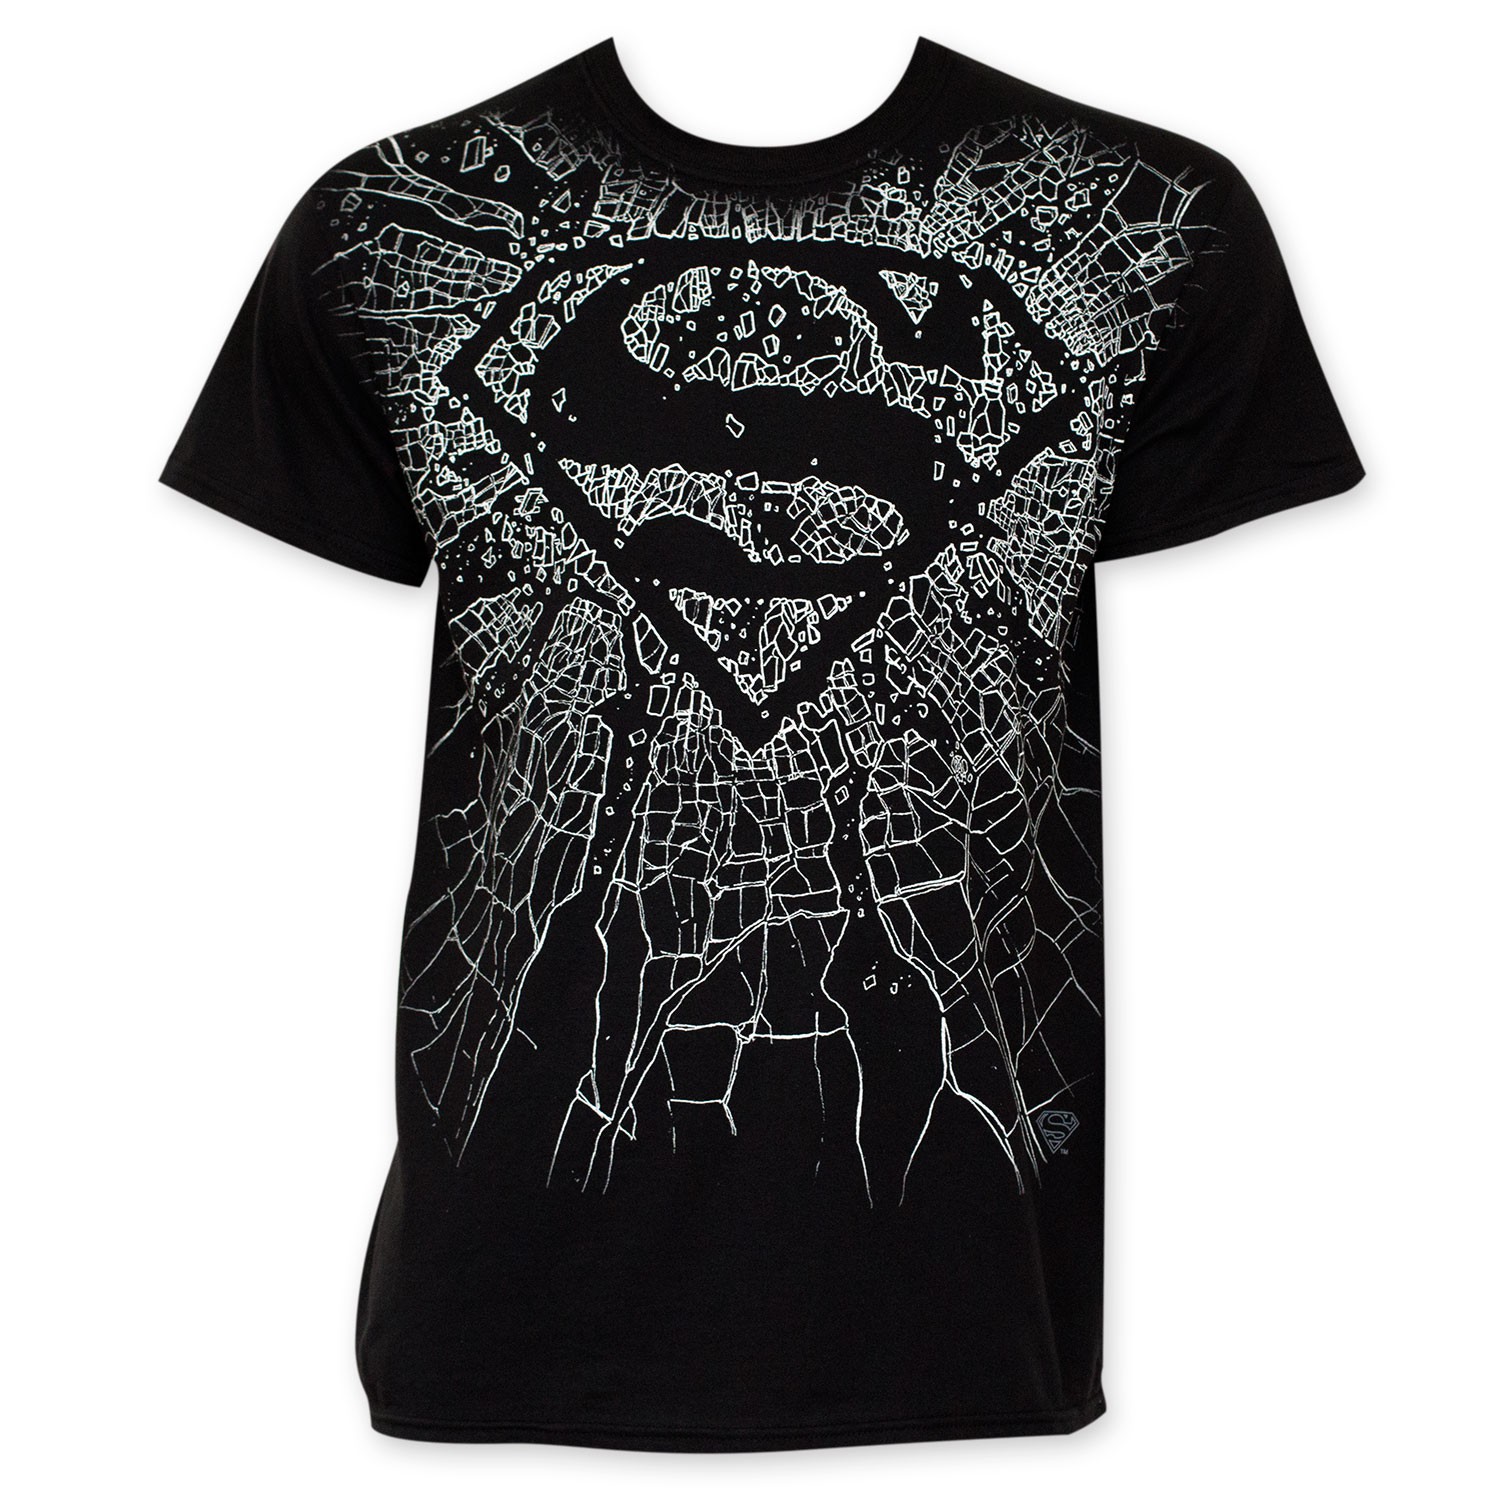 Superman Men's Black Shattered Logo Tee Shirt